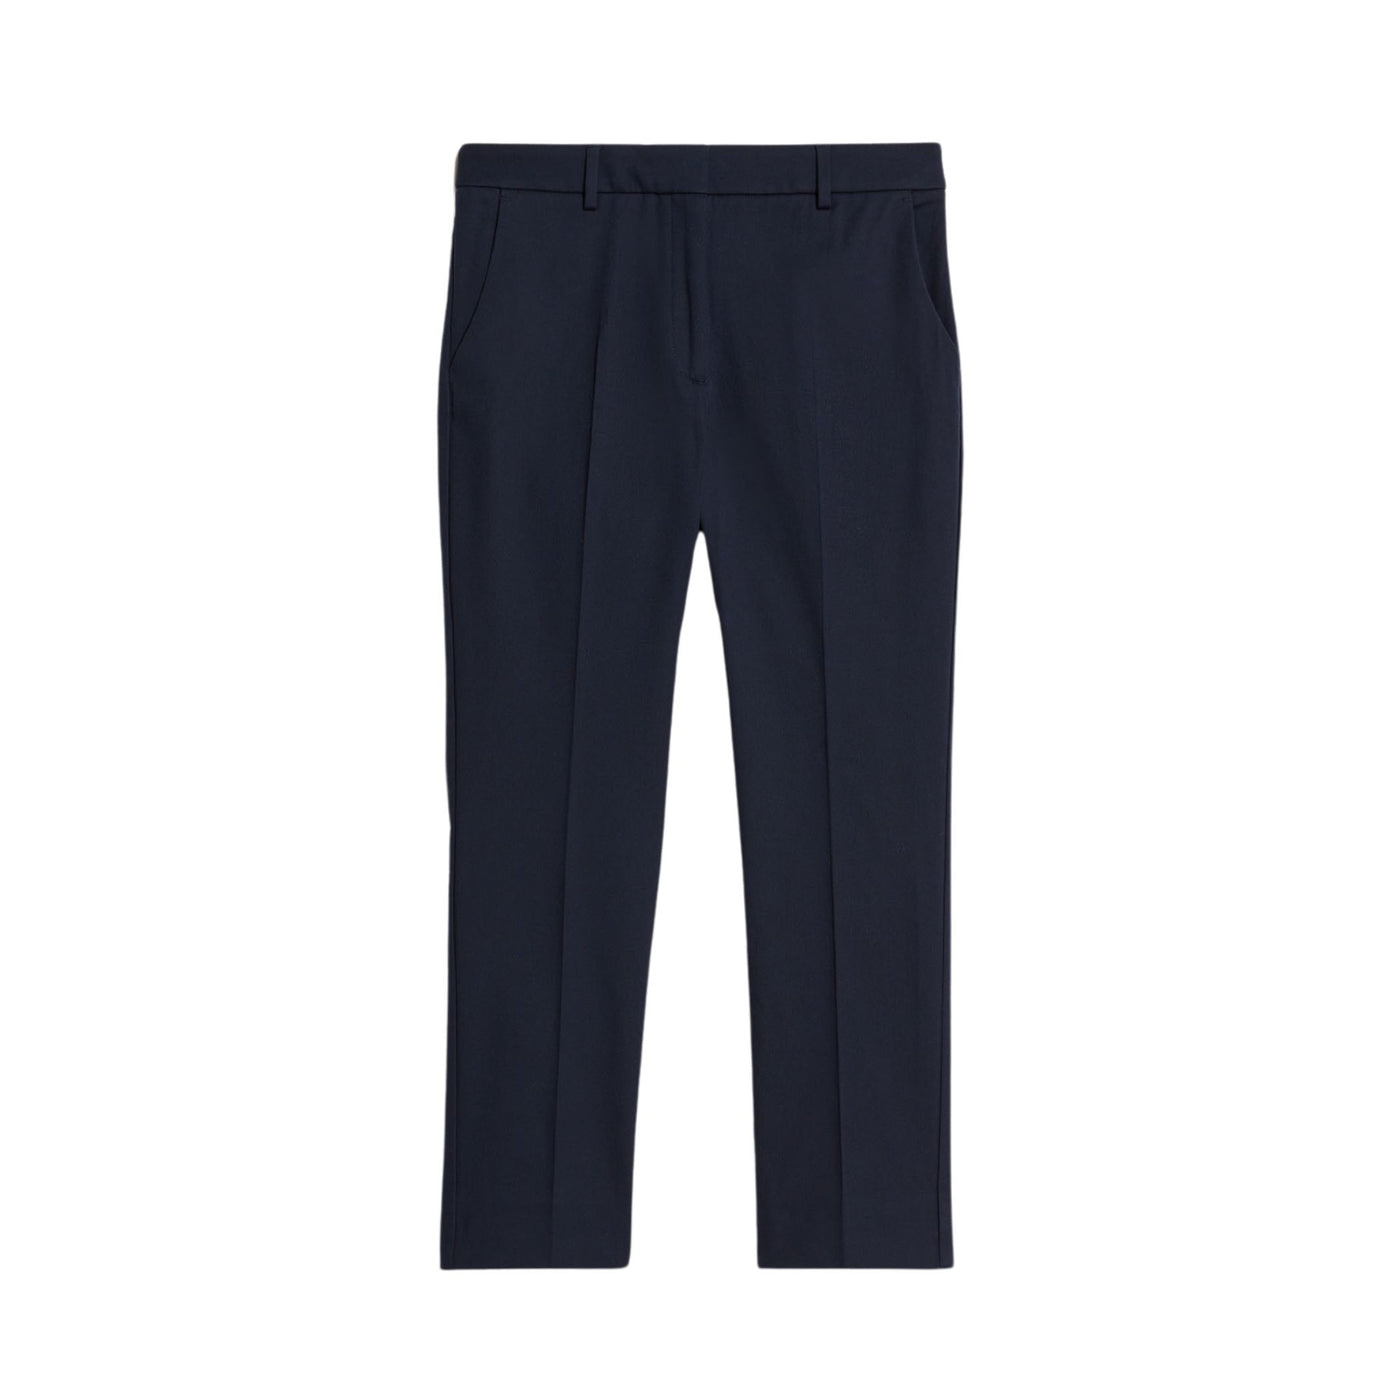 Pantalone Donna Blu in cotone elasticizzato con zip e gancetto 